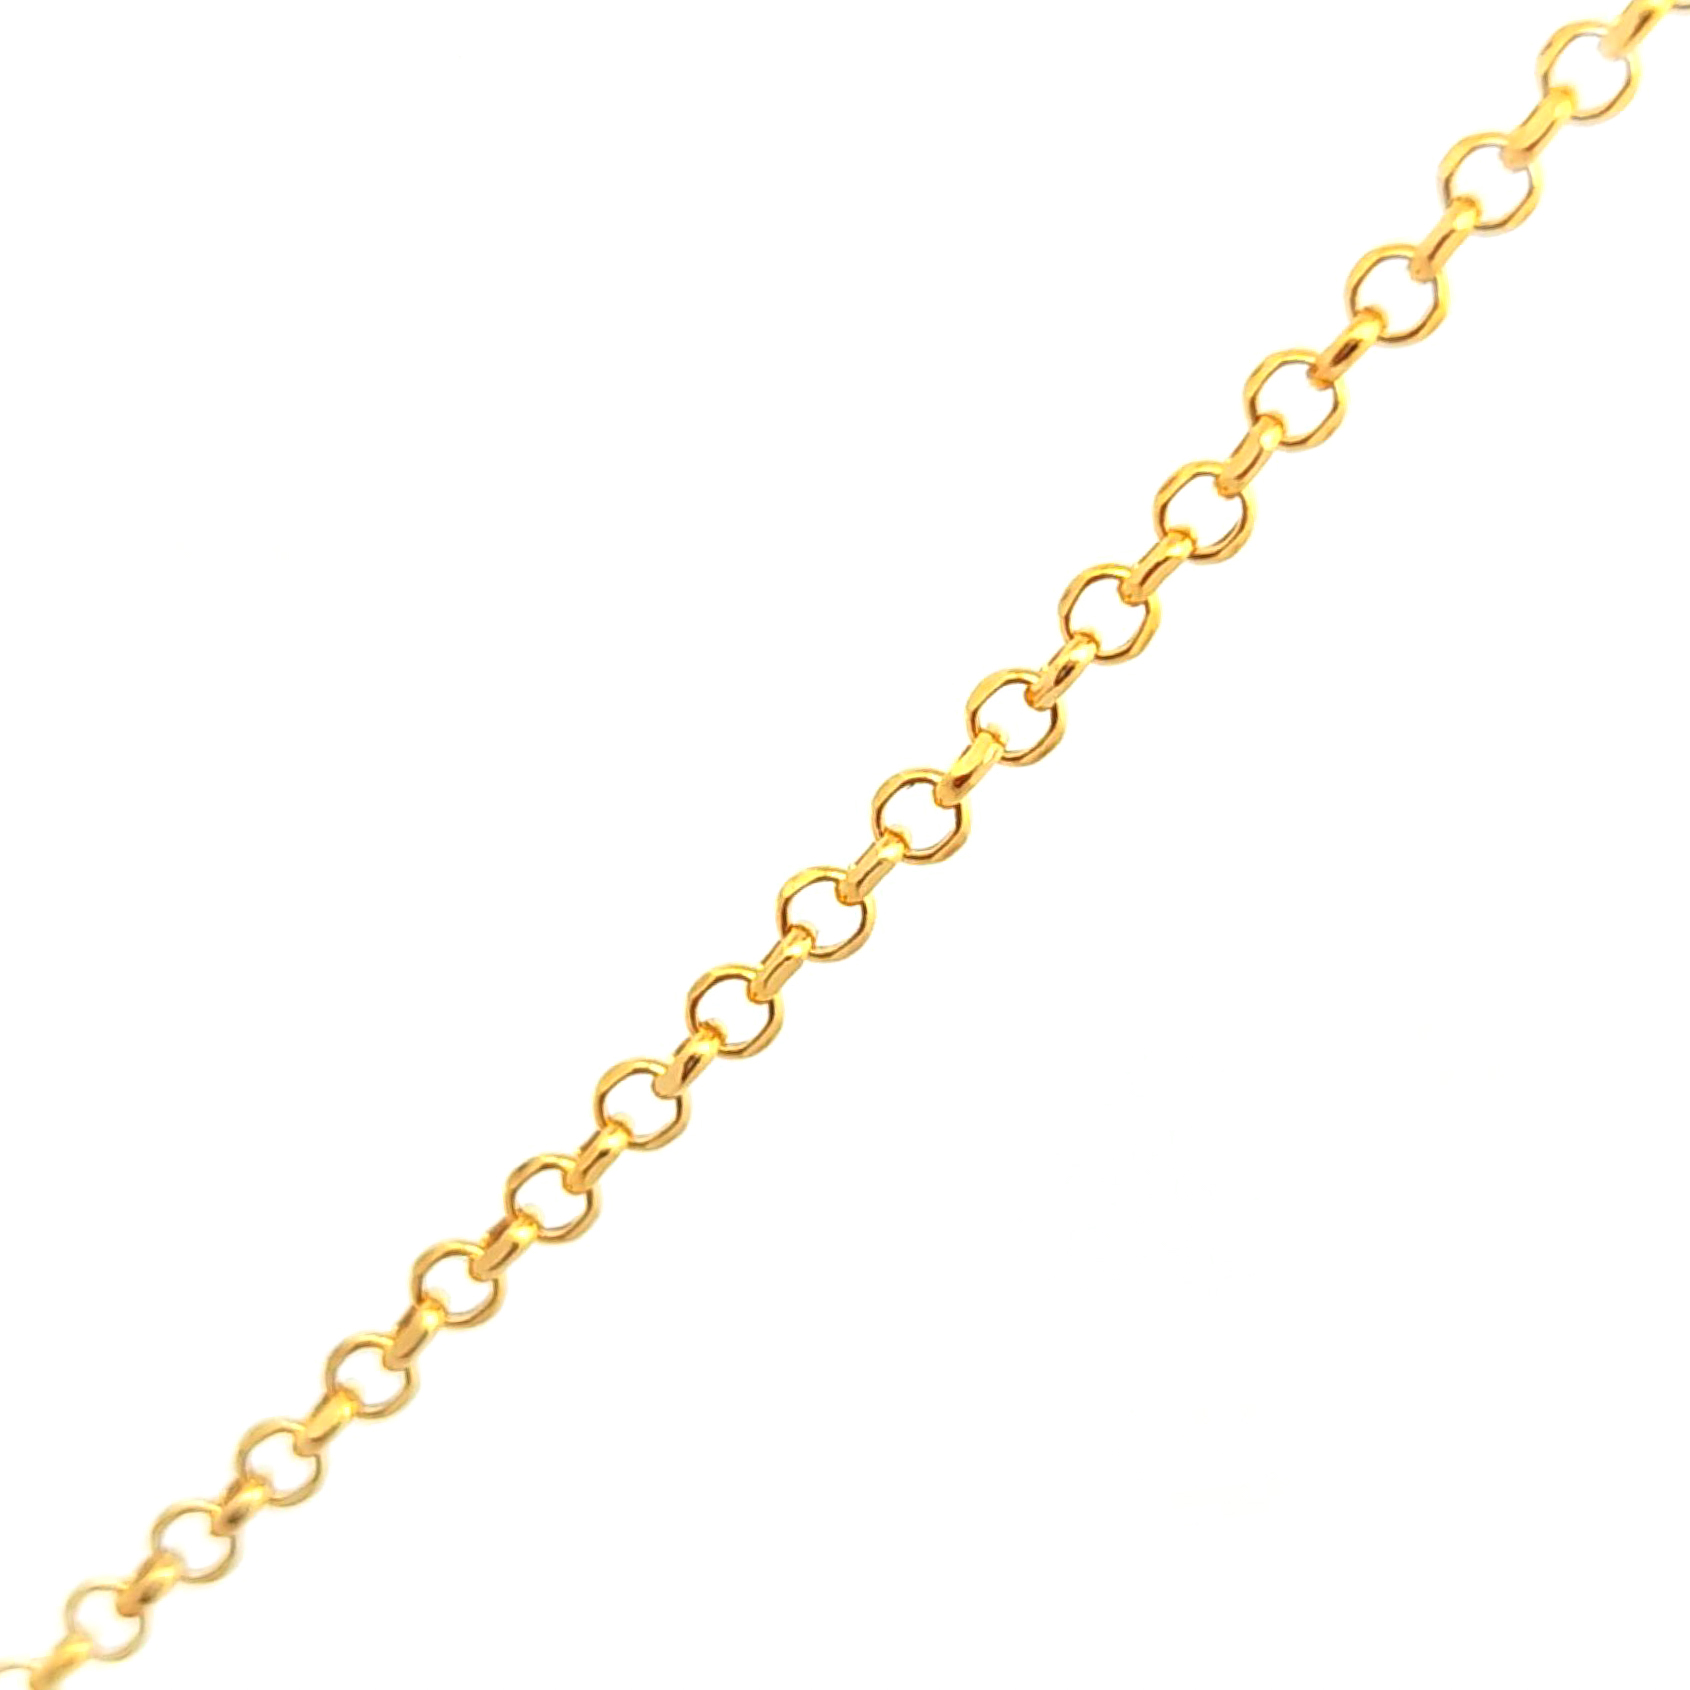 Cadena de oro amarillo 18k de eslabones simple de 2mm medida 50 cm, peso 2,38 gr 2